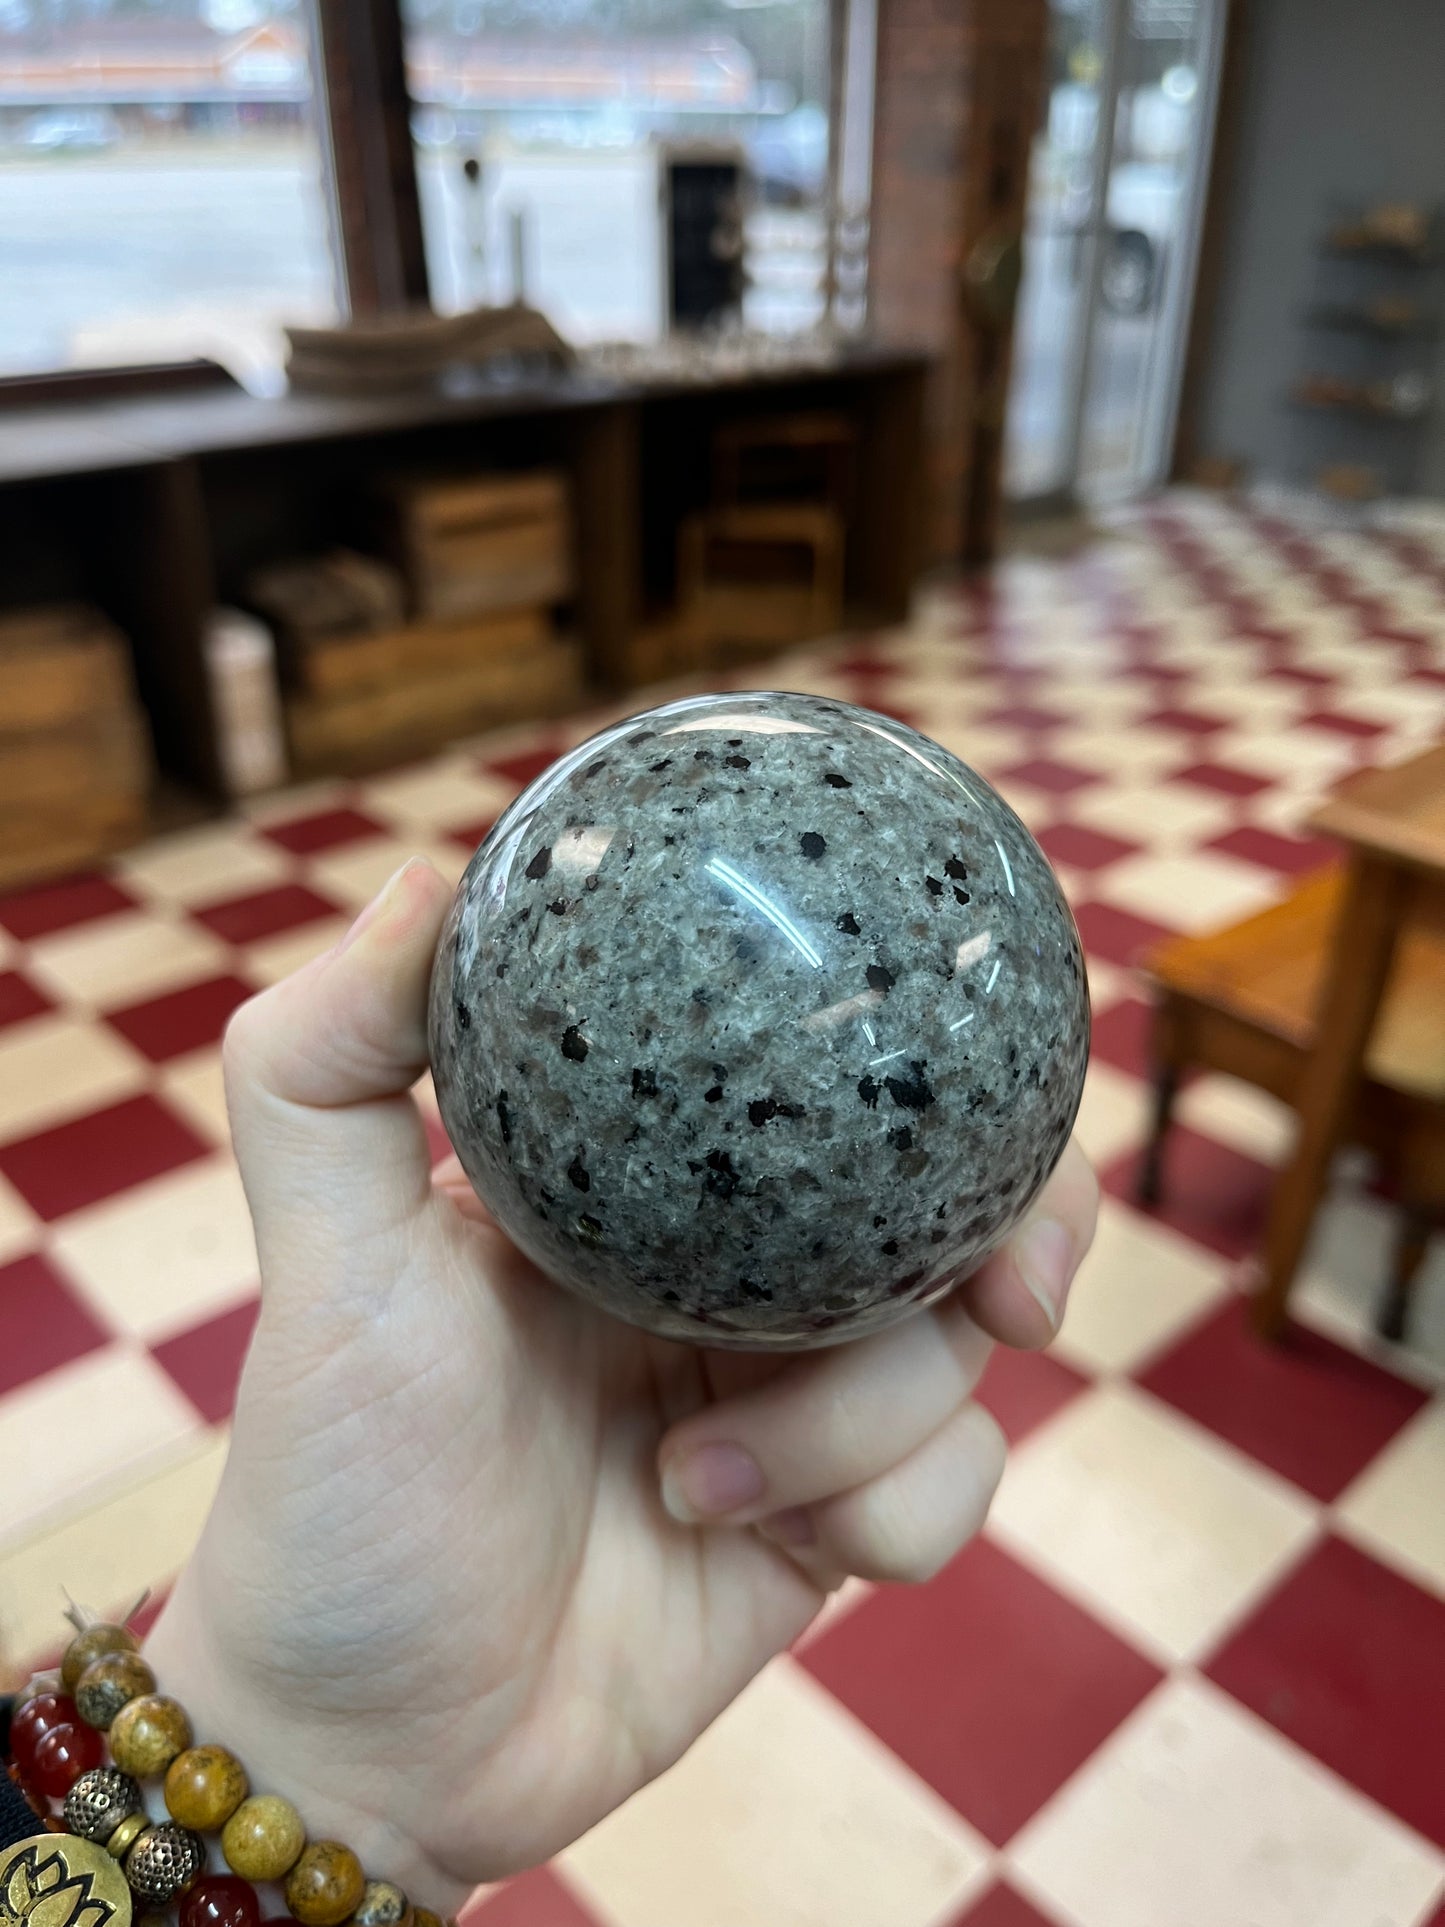 Yooperlite sphere